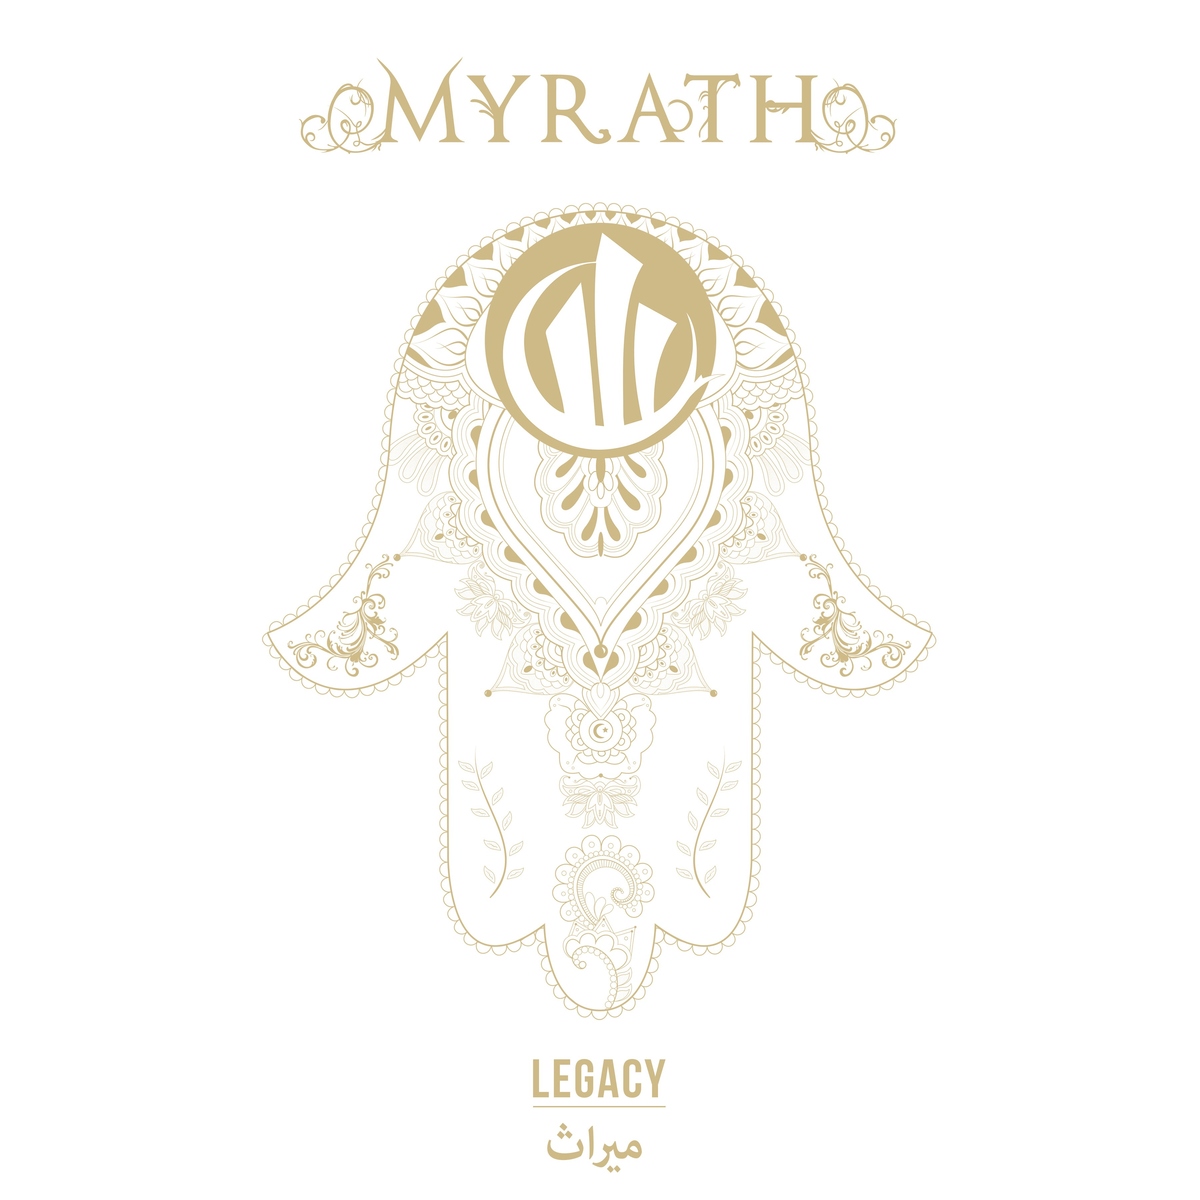 Resultado de imagem para myrath 2016 - Legacy